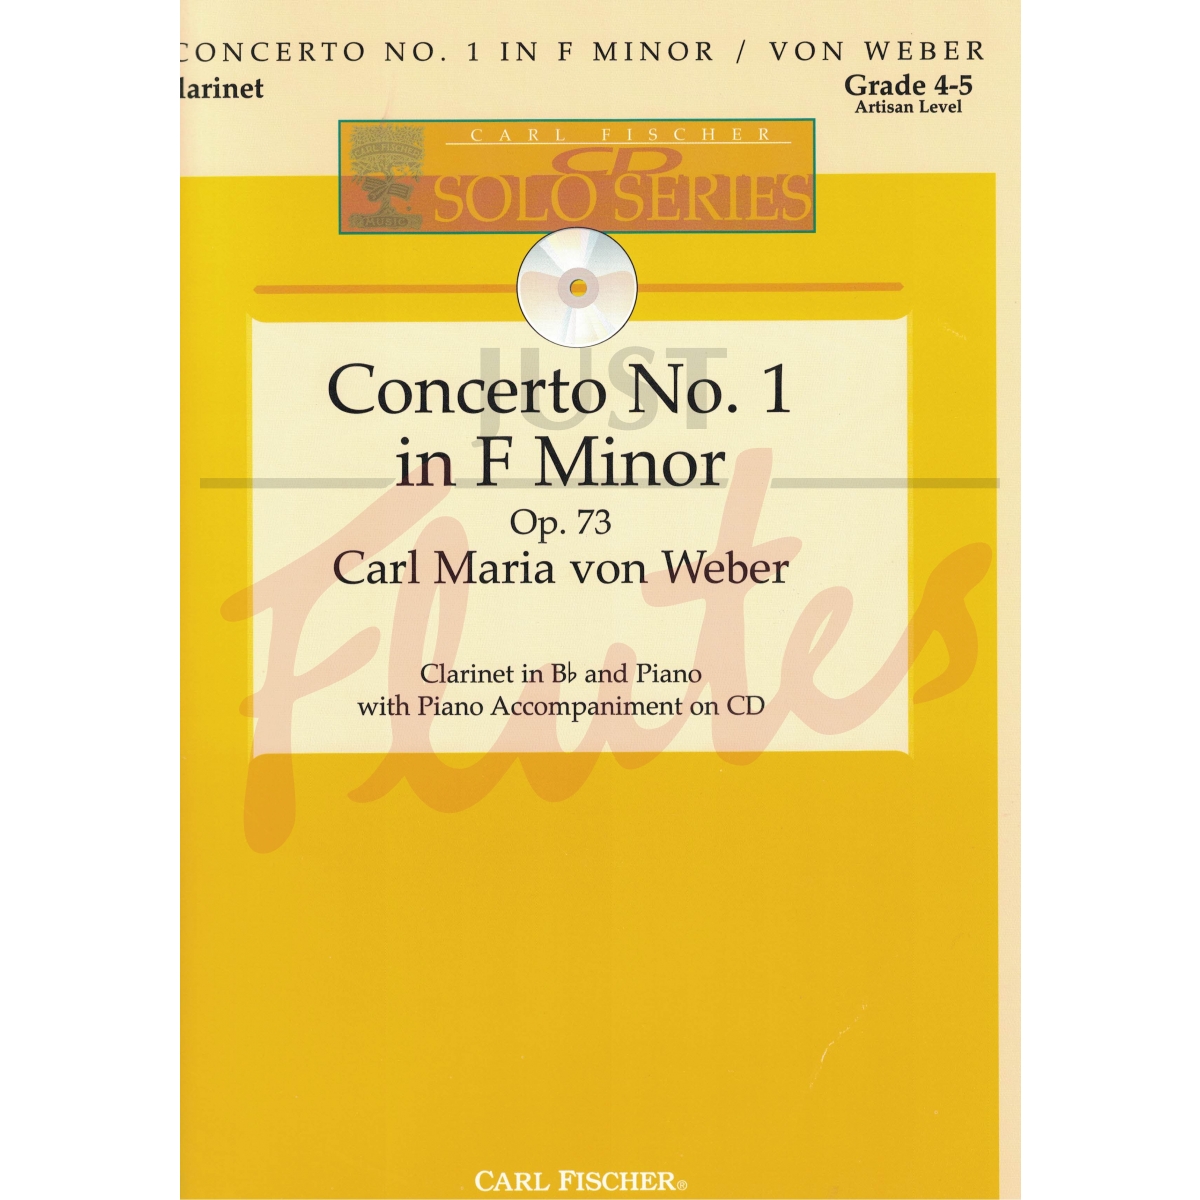 Concerto No 1 in F minor